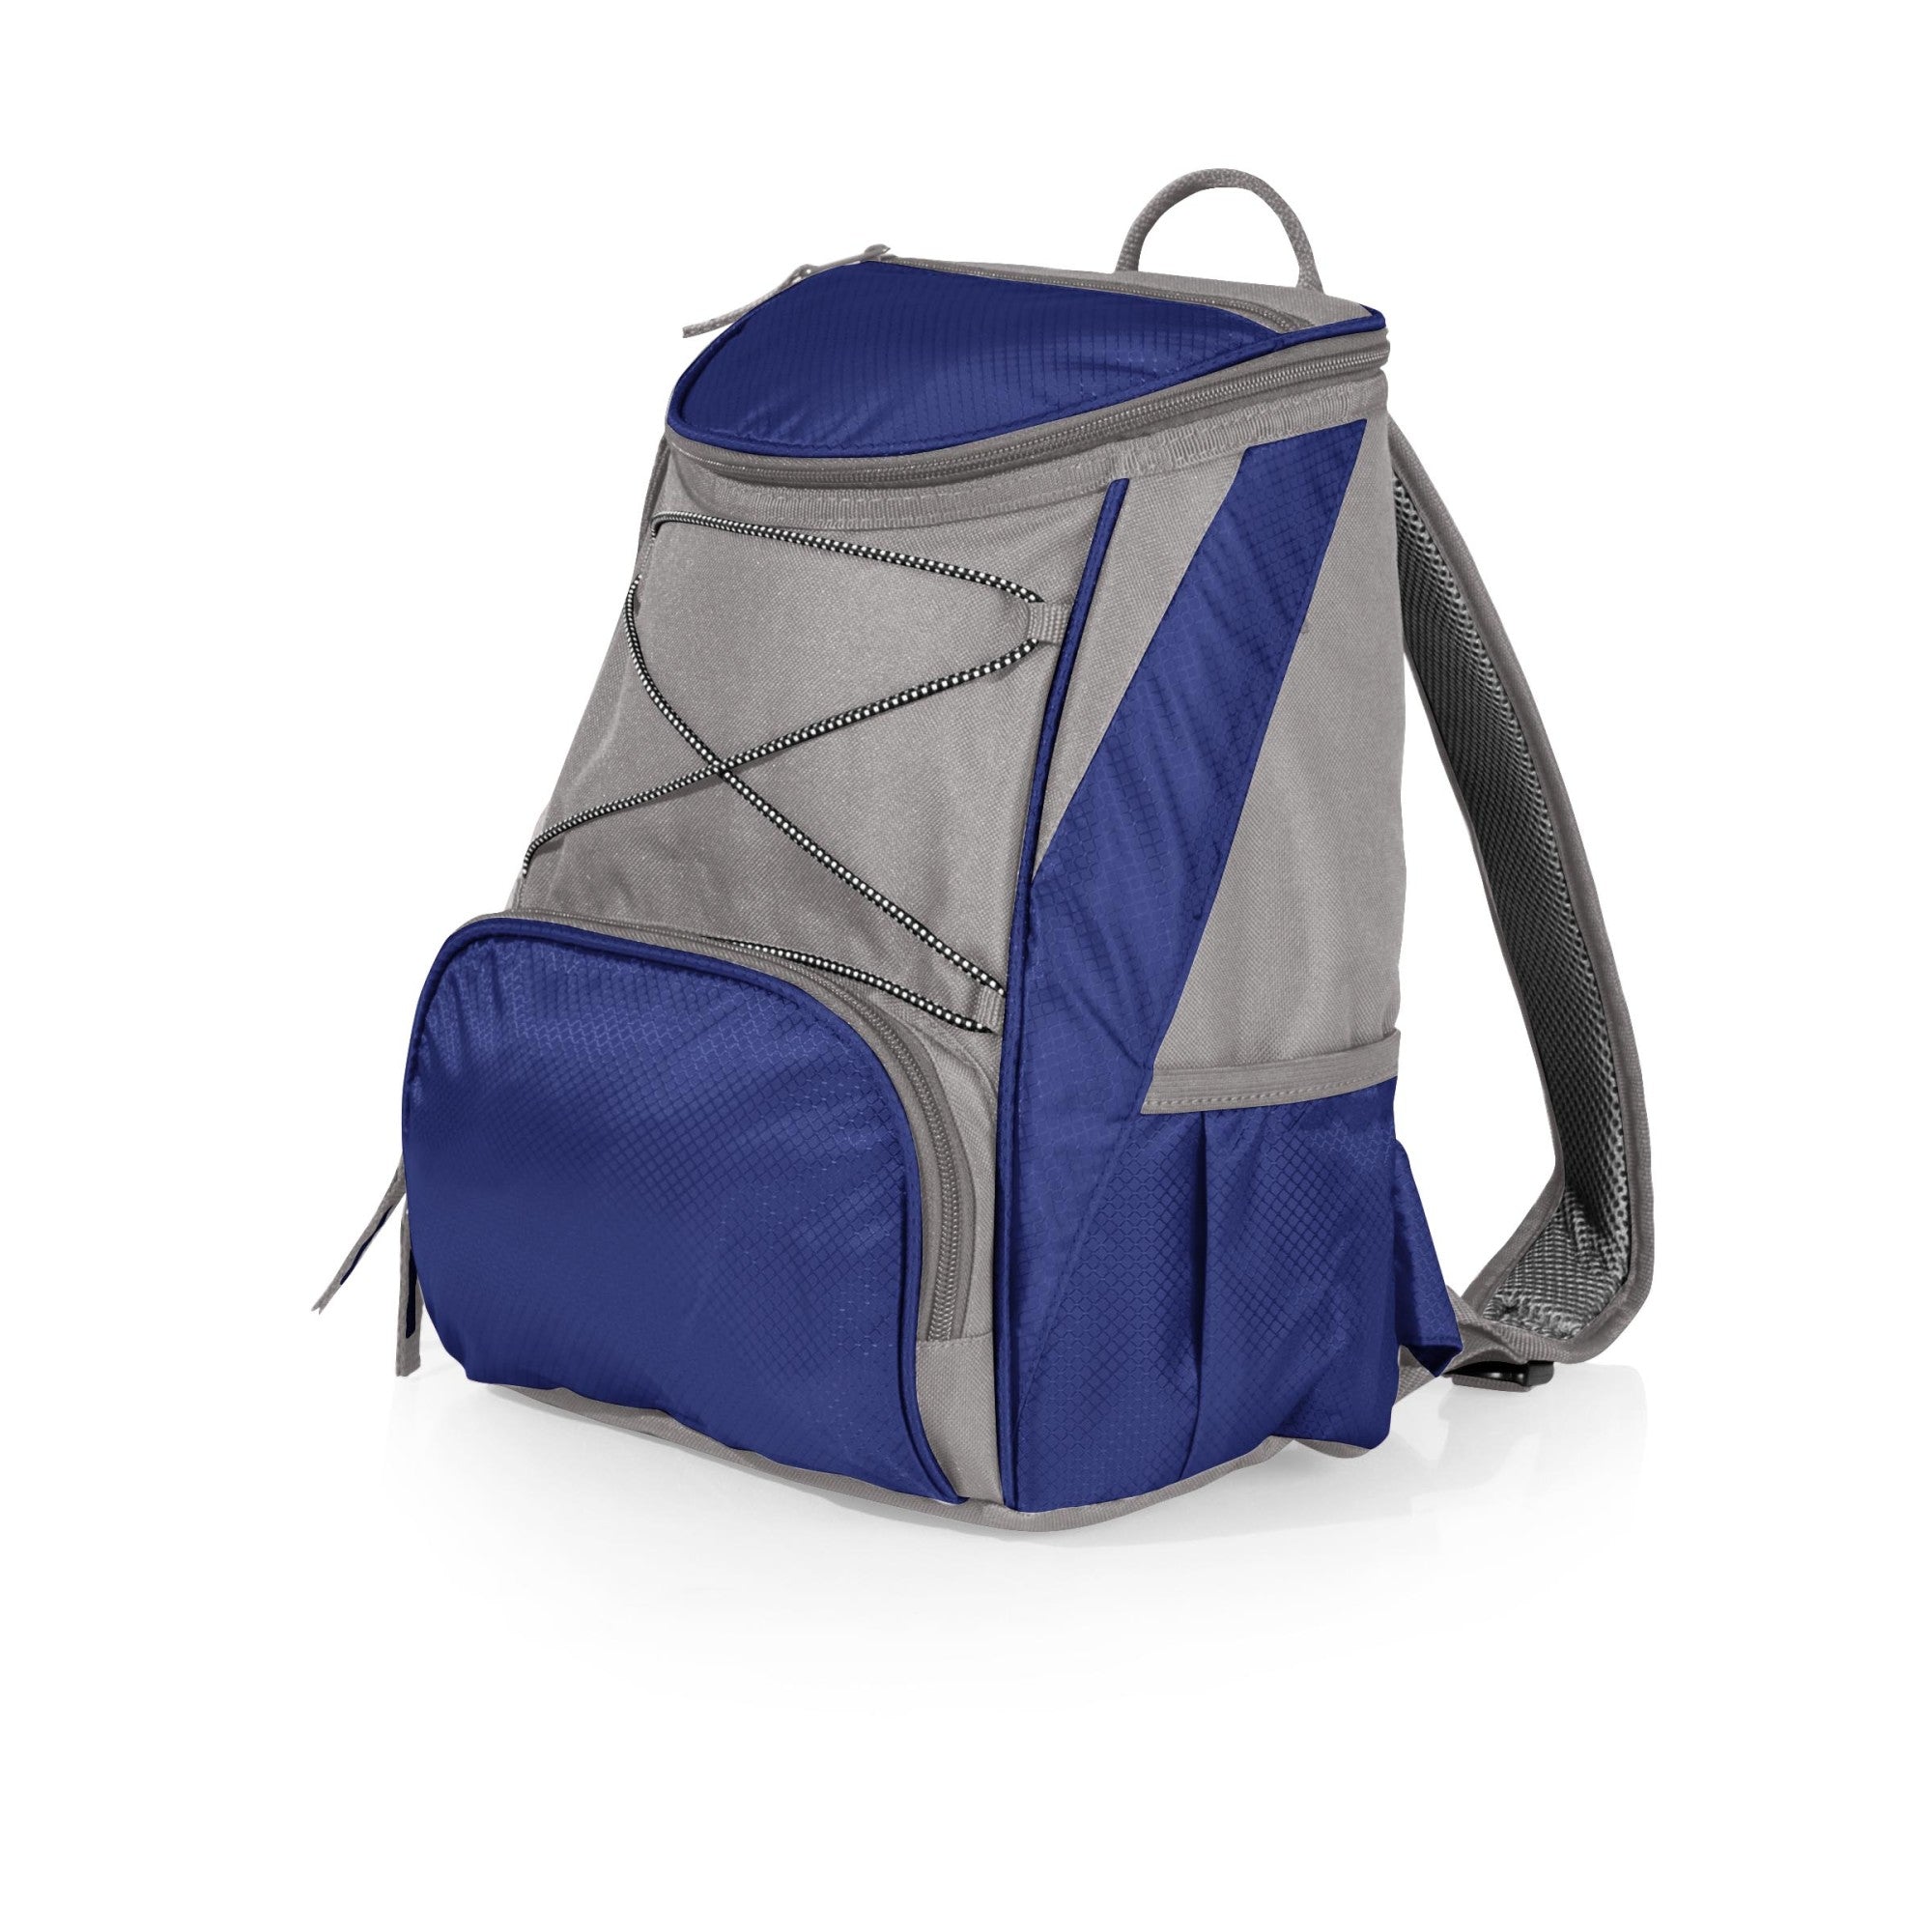 Lilo & Stitch - Scrump - PTX Backpack Cooler